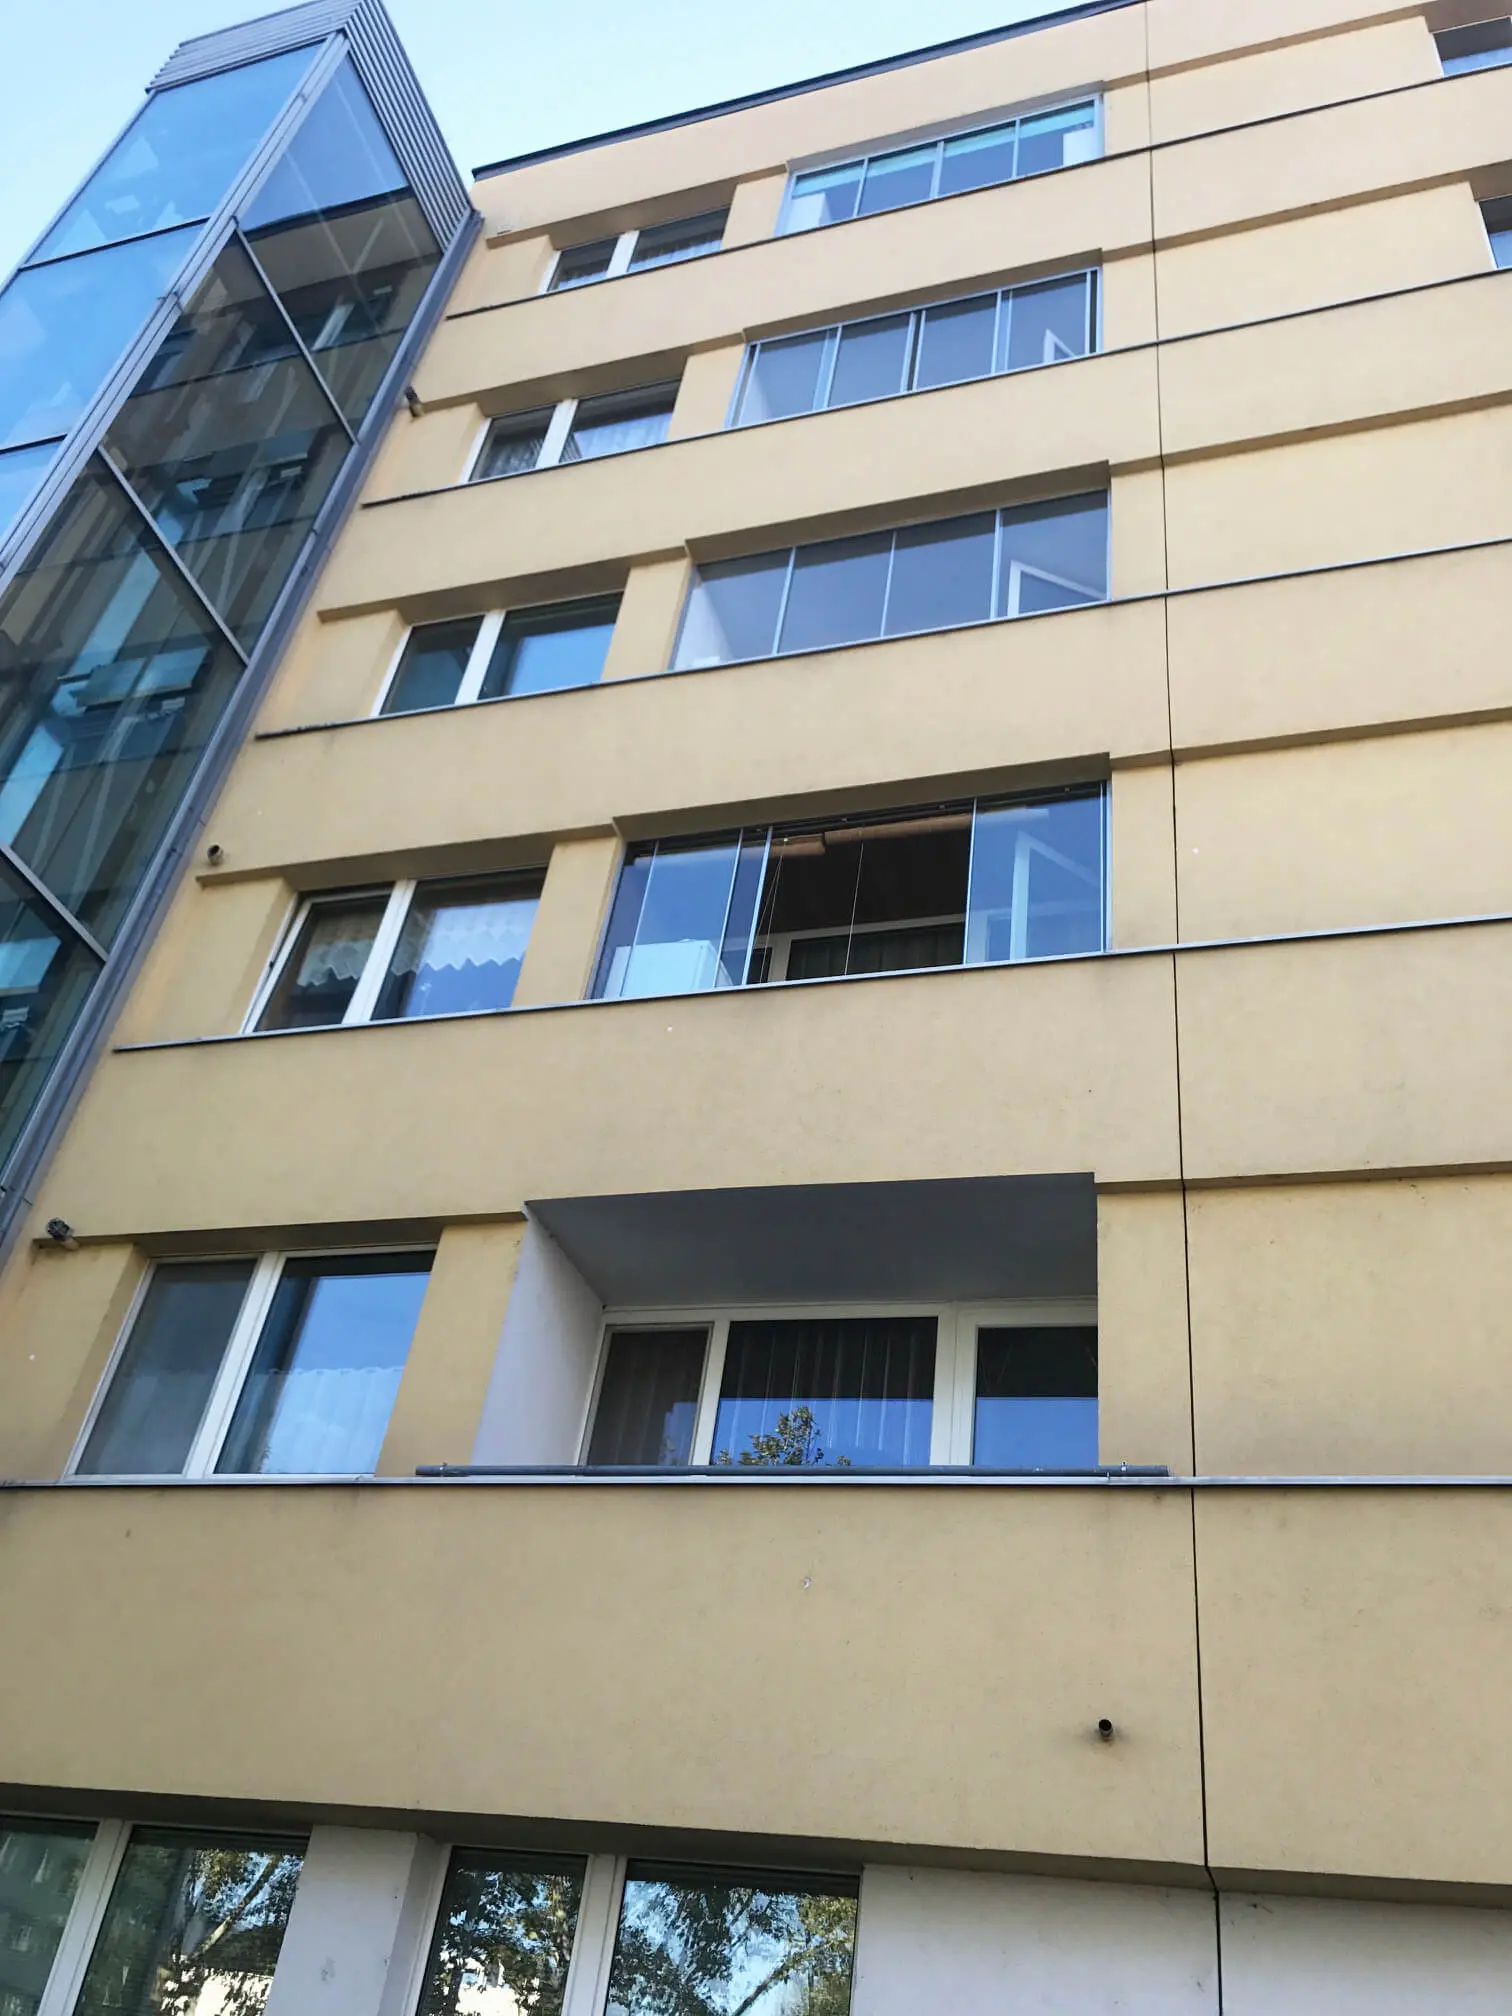 Balkonverglasungen für Mietwohnungen